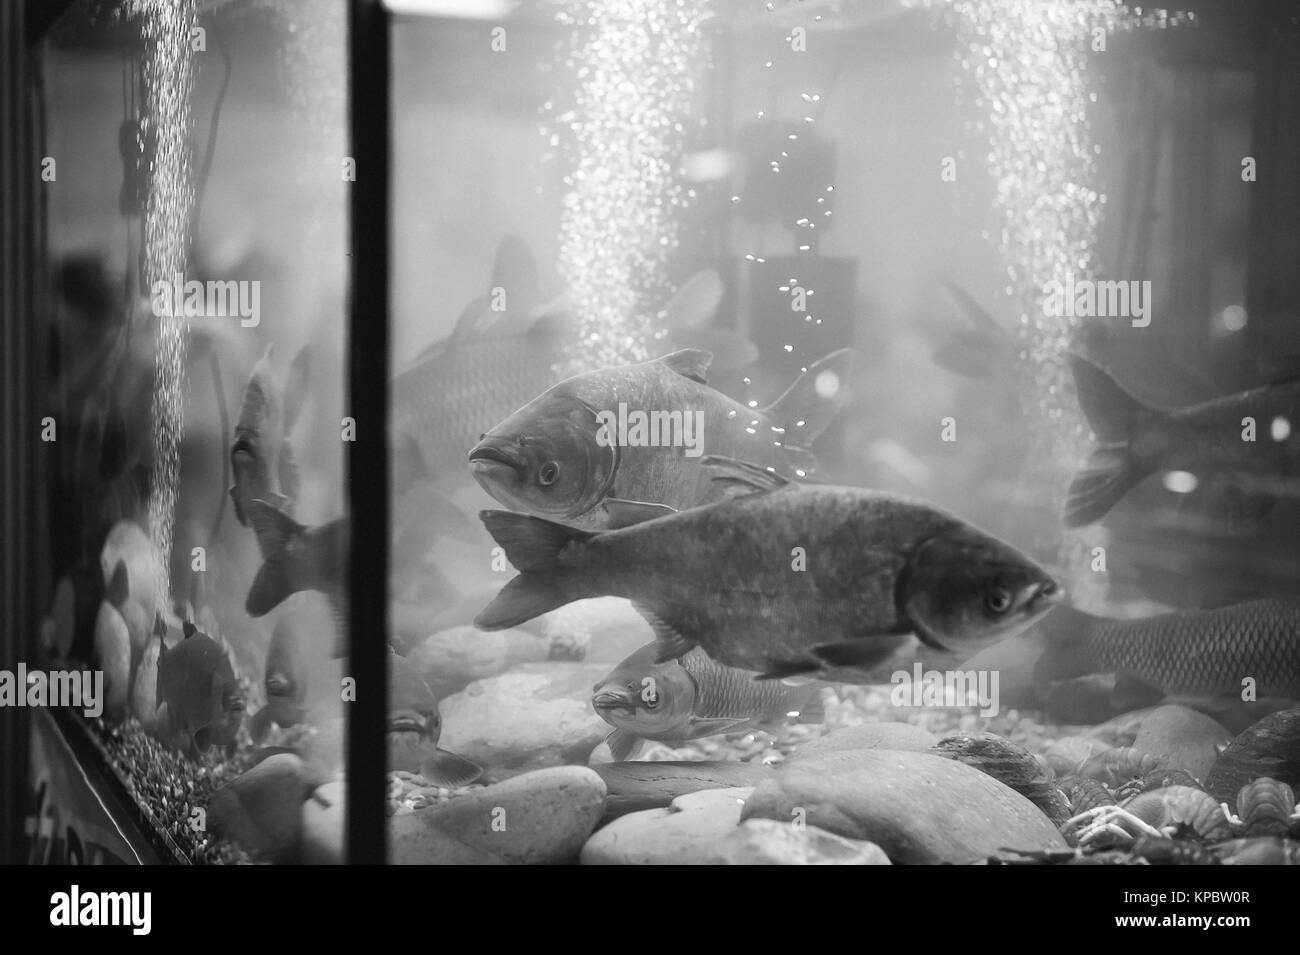 Süßwasser Aquarienfisch Schwarzweiß Stockfotos und  bilder   Alamy